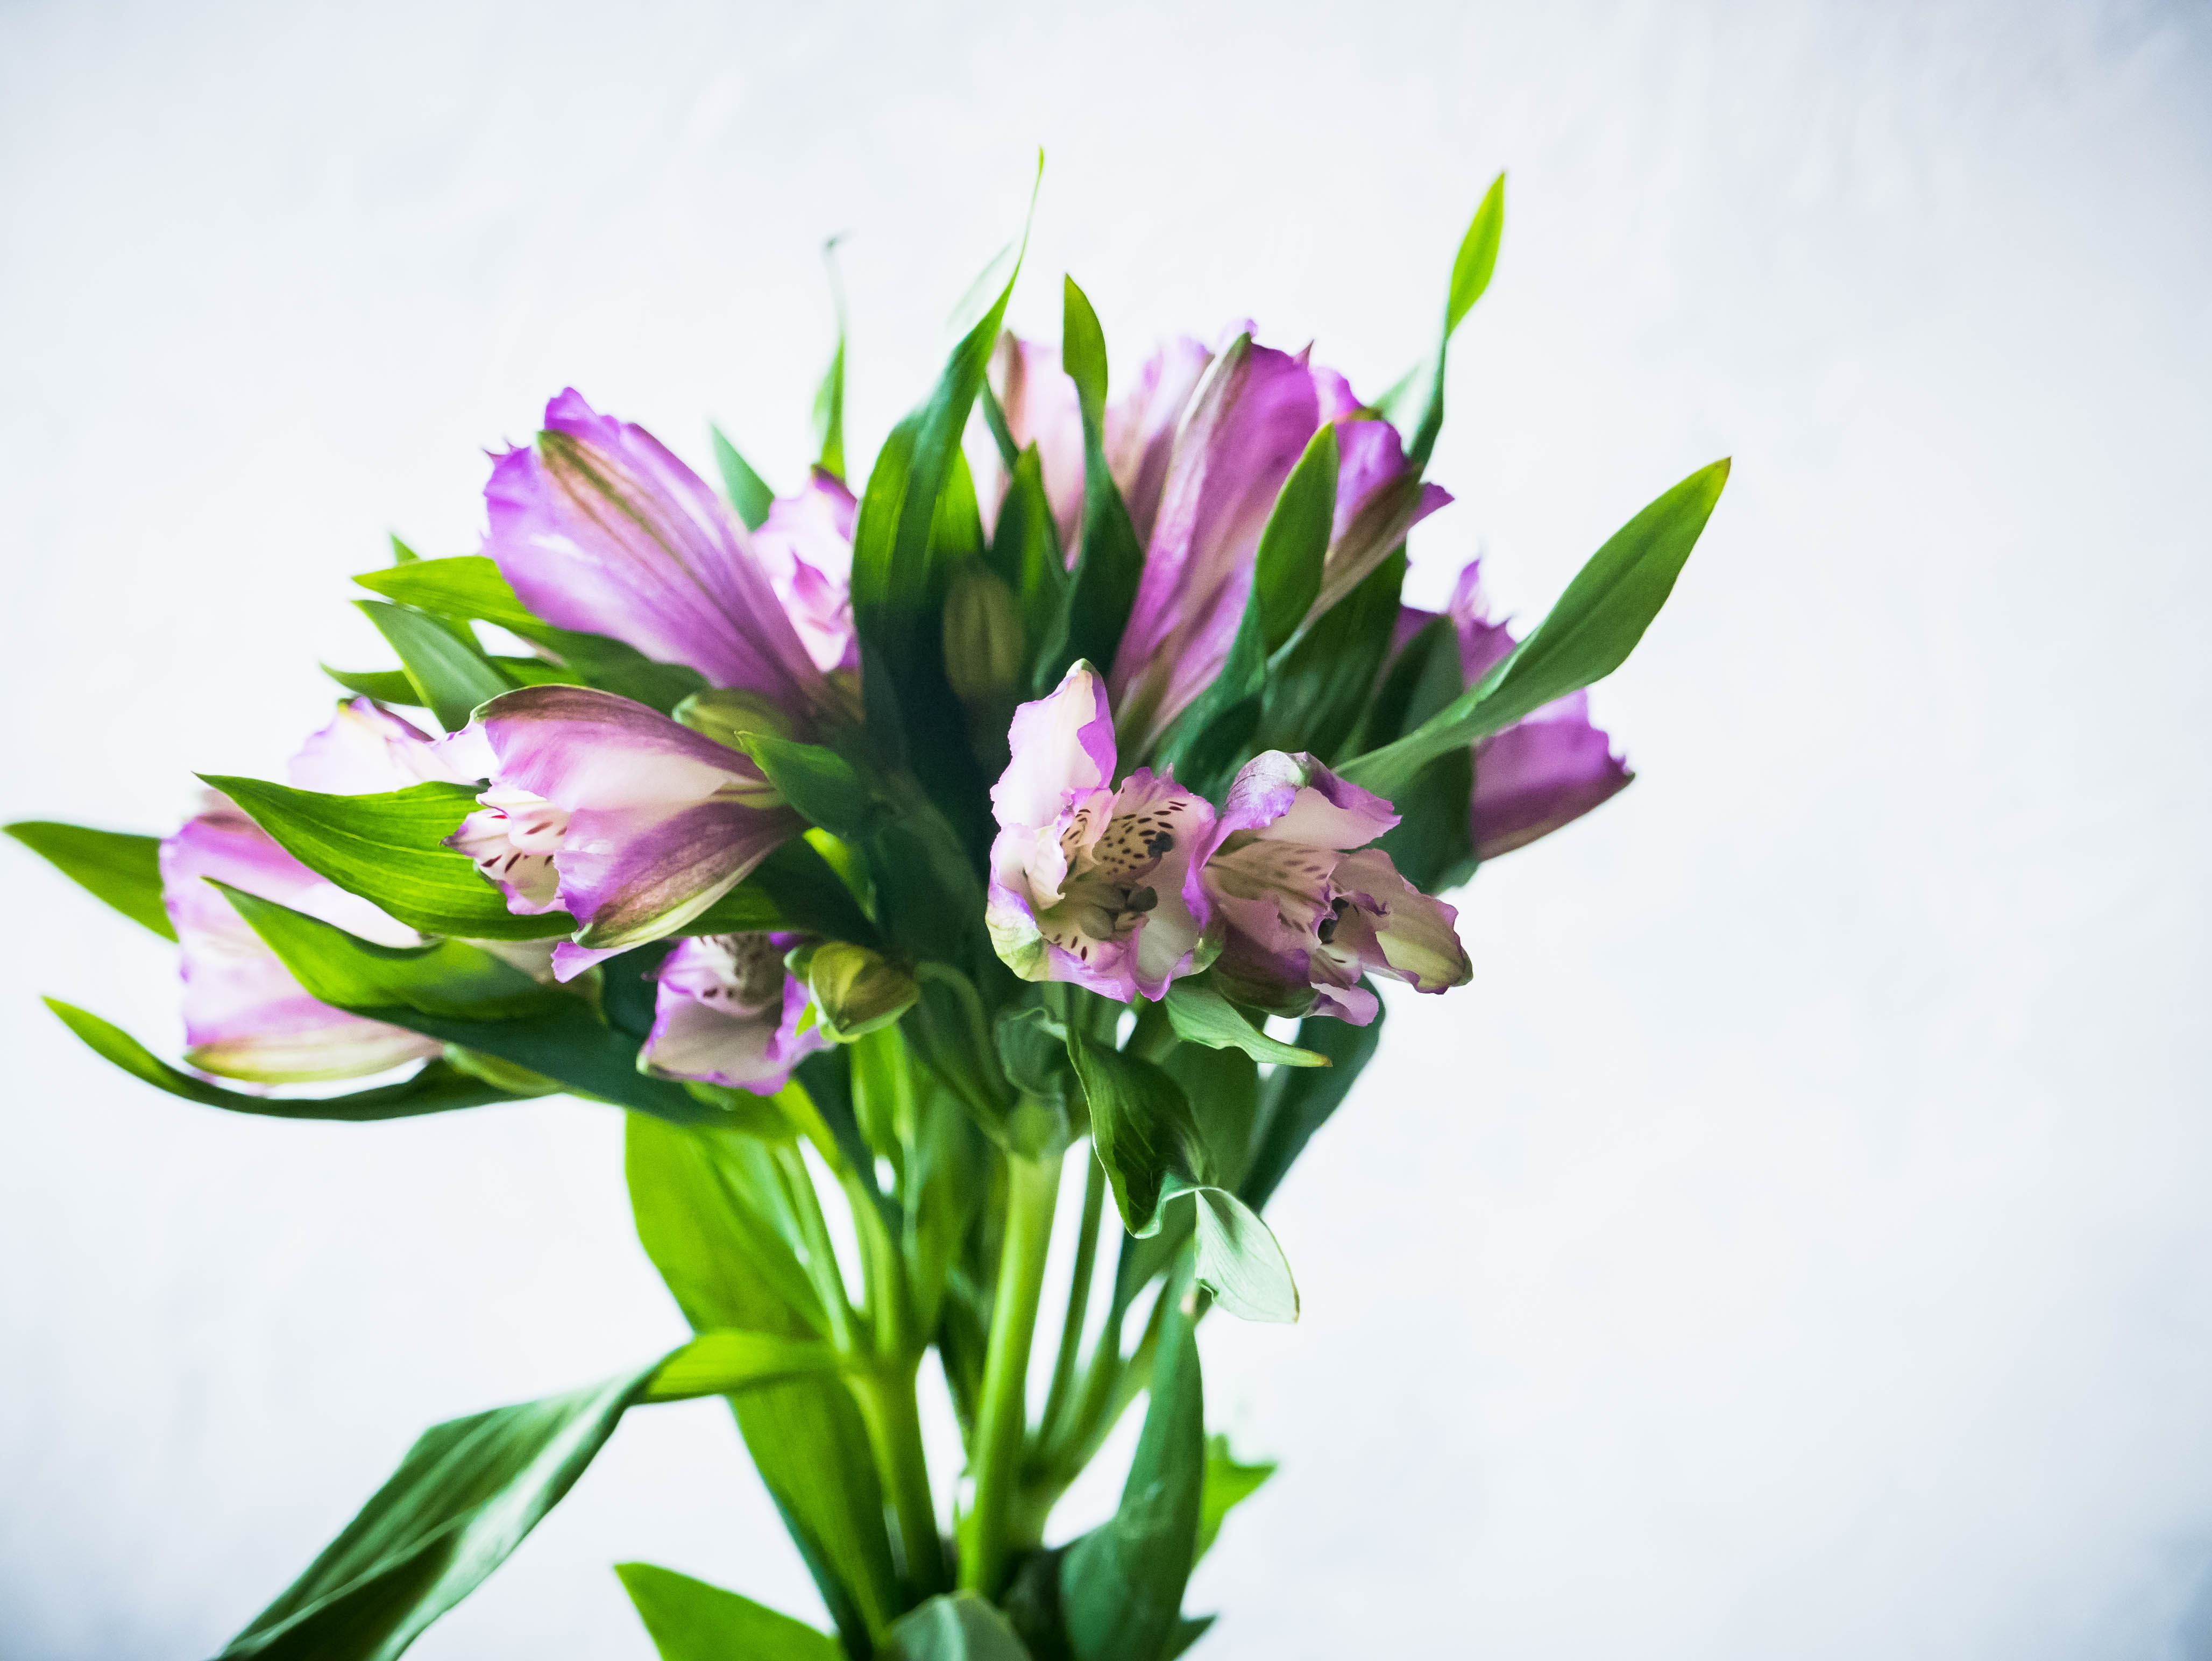 Photoshoot of Flowers | Purple Flowers — Steemit